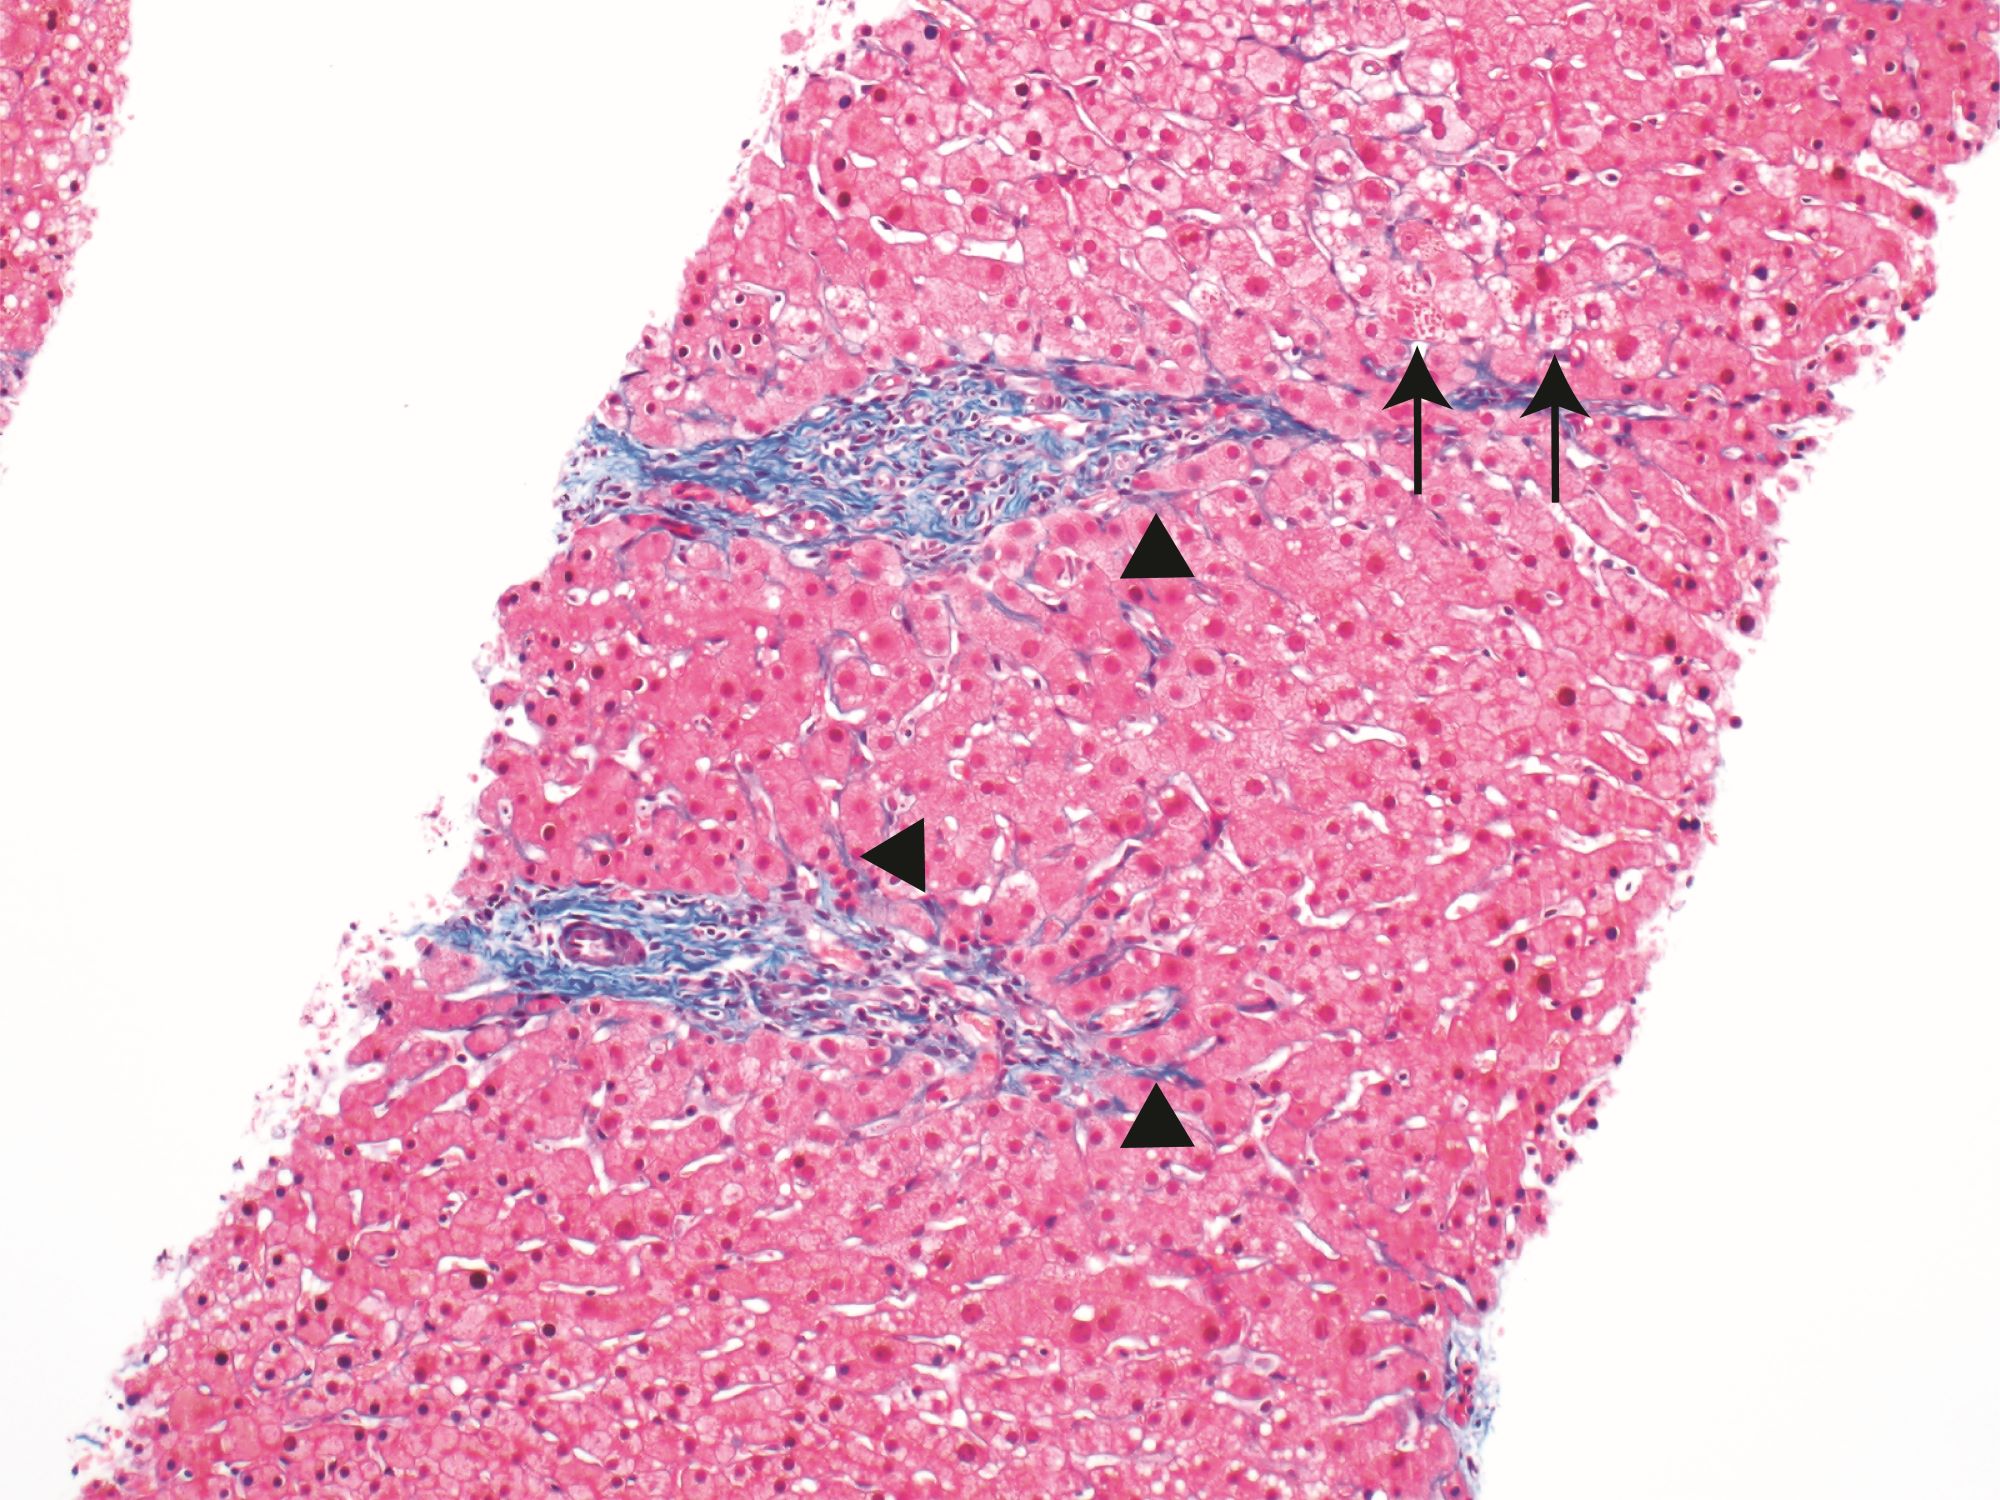 Periportal fibrosis in A1AT